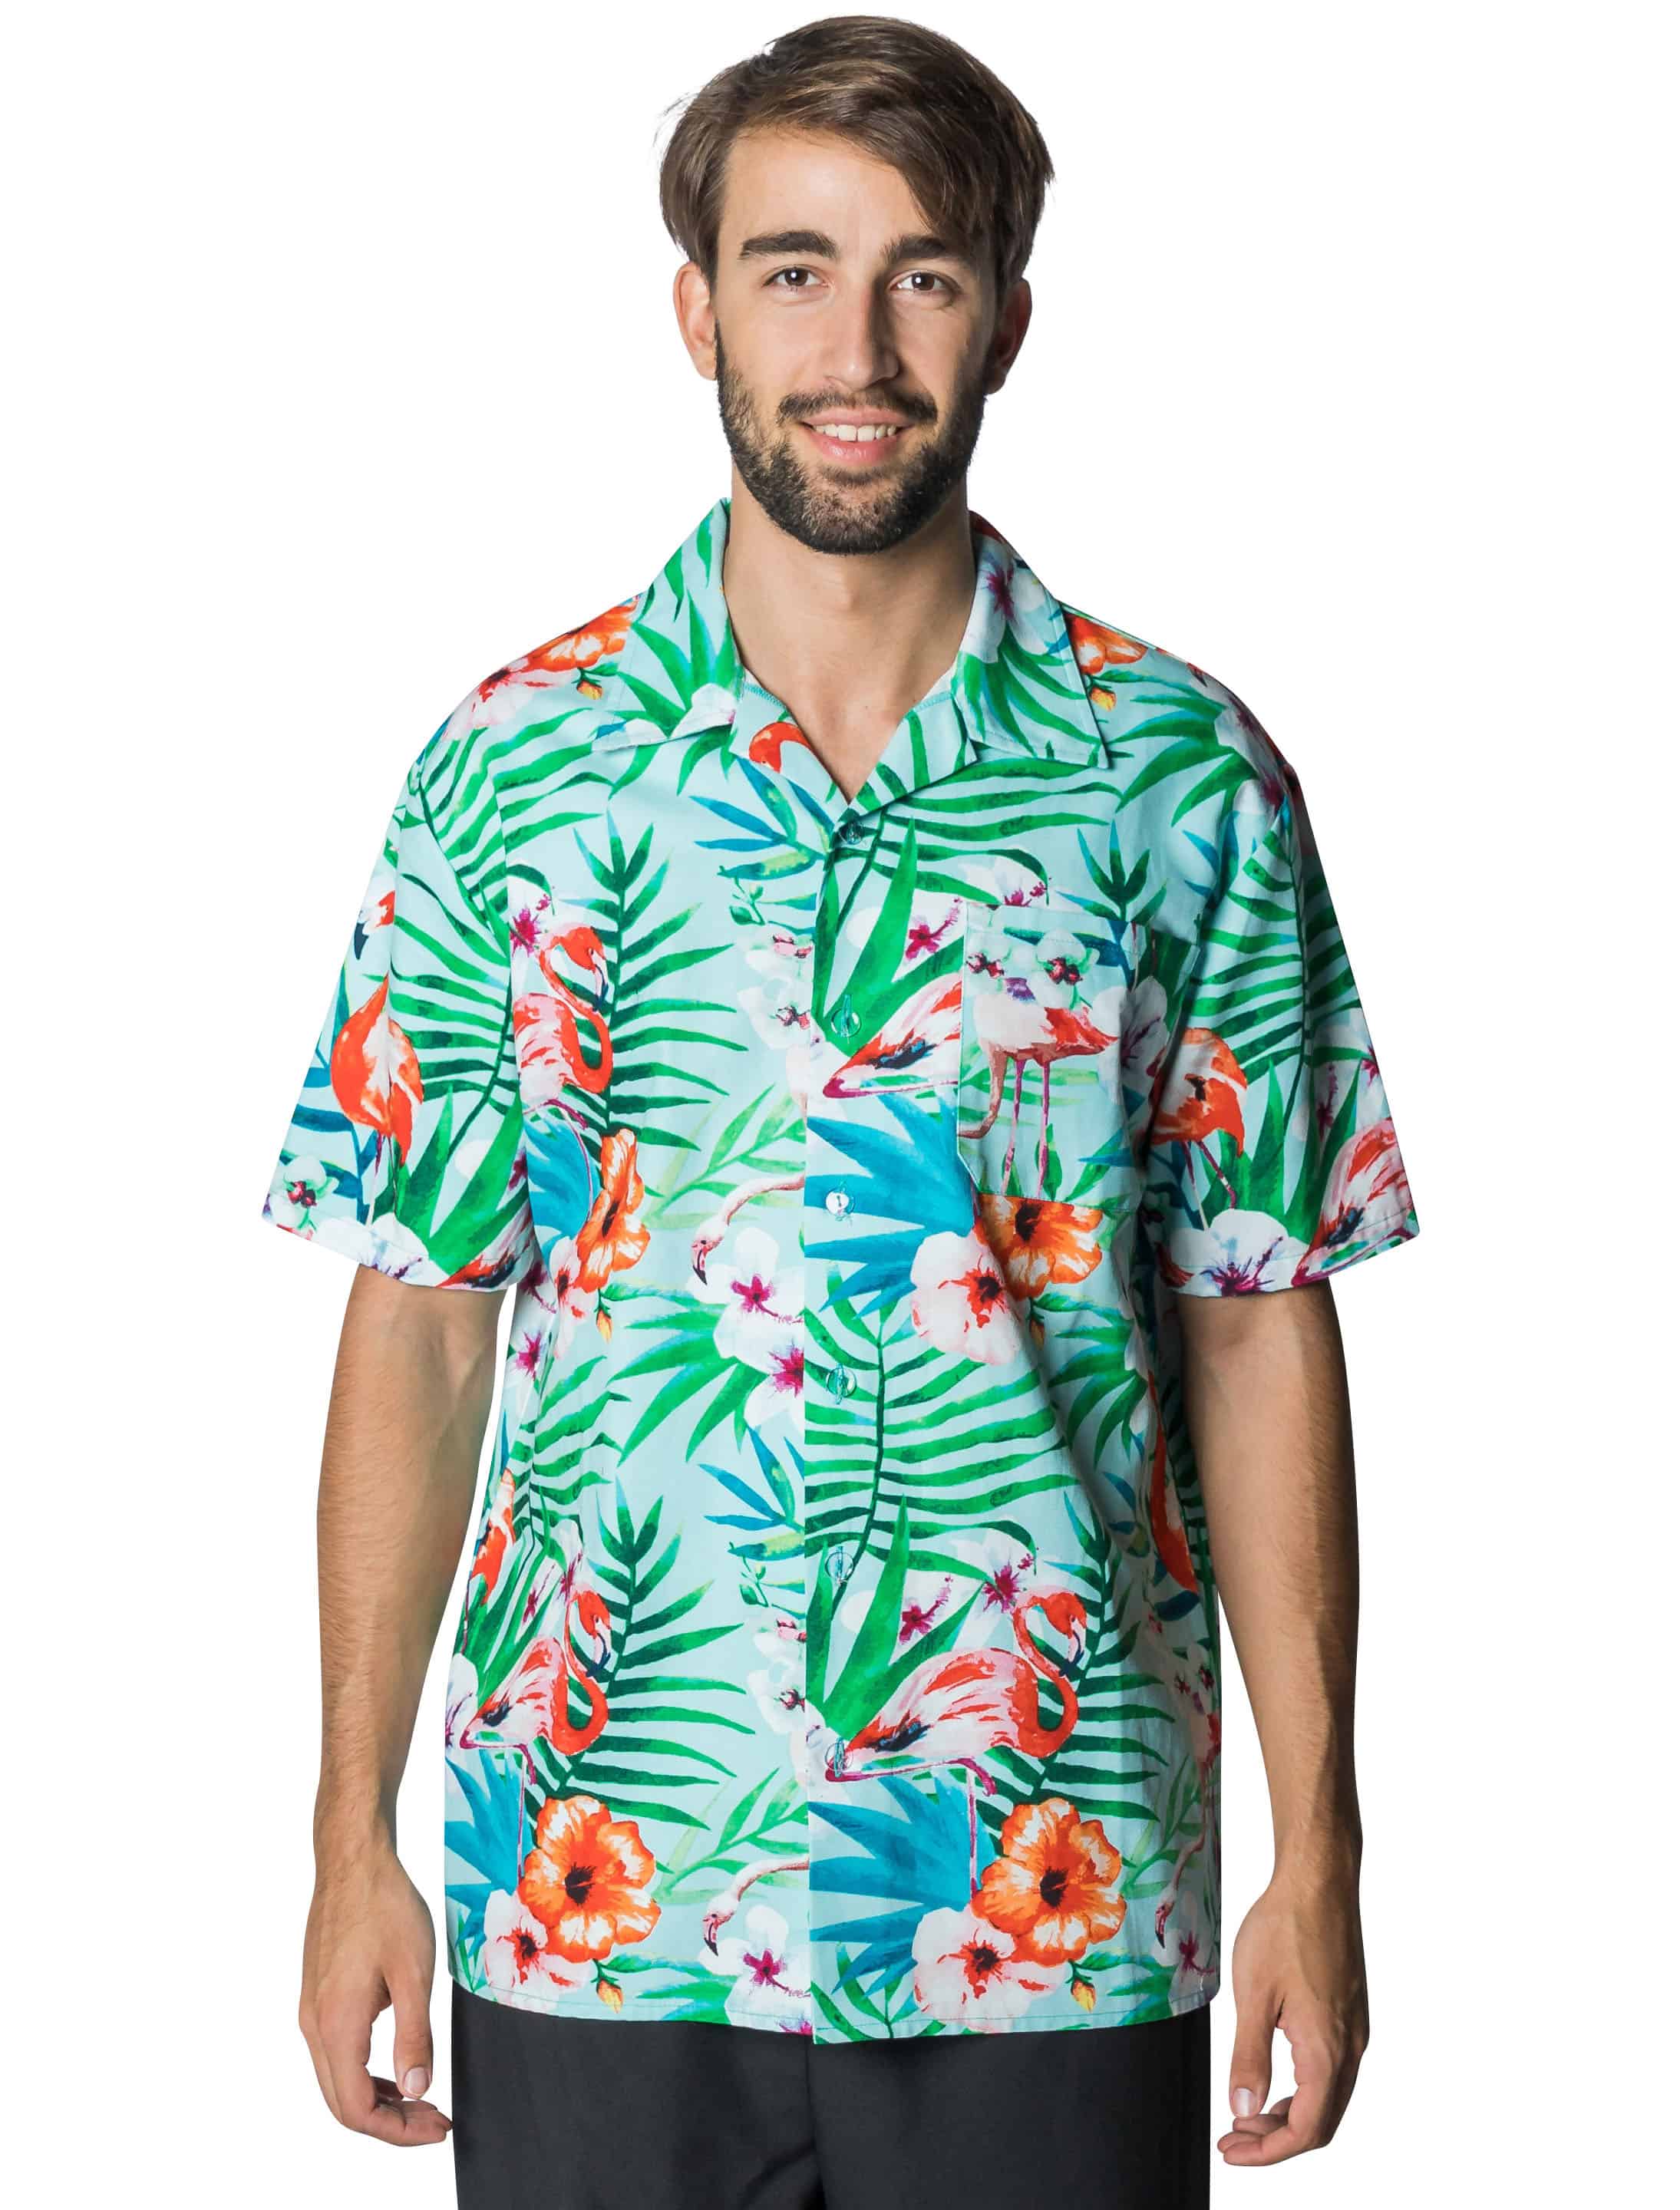 Hemd Hawaii mit Flamingos Herren grün S/M